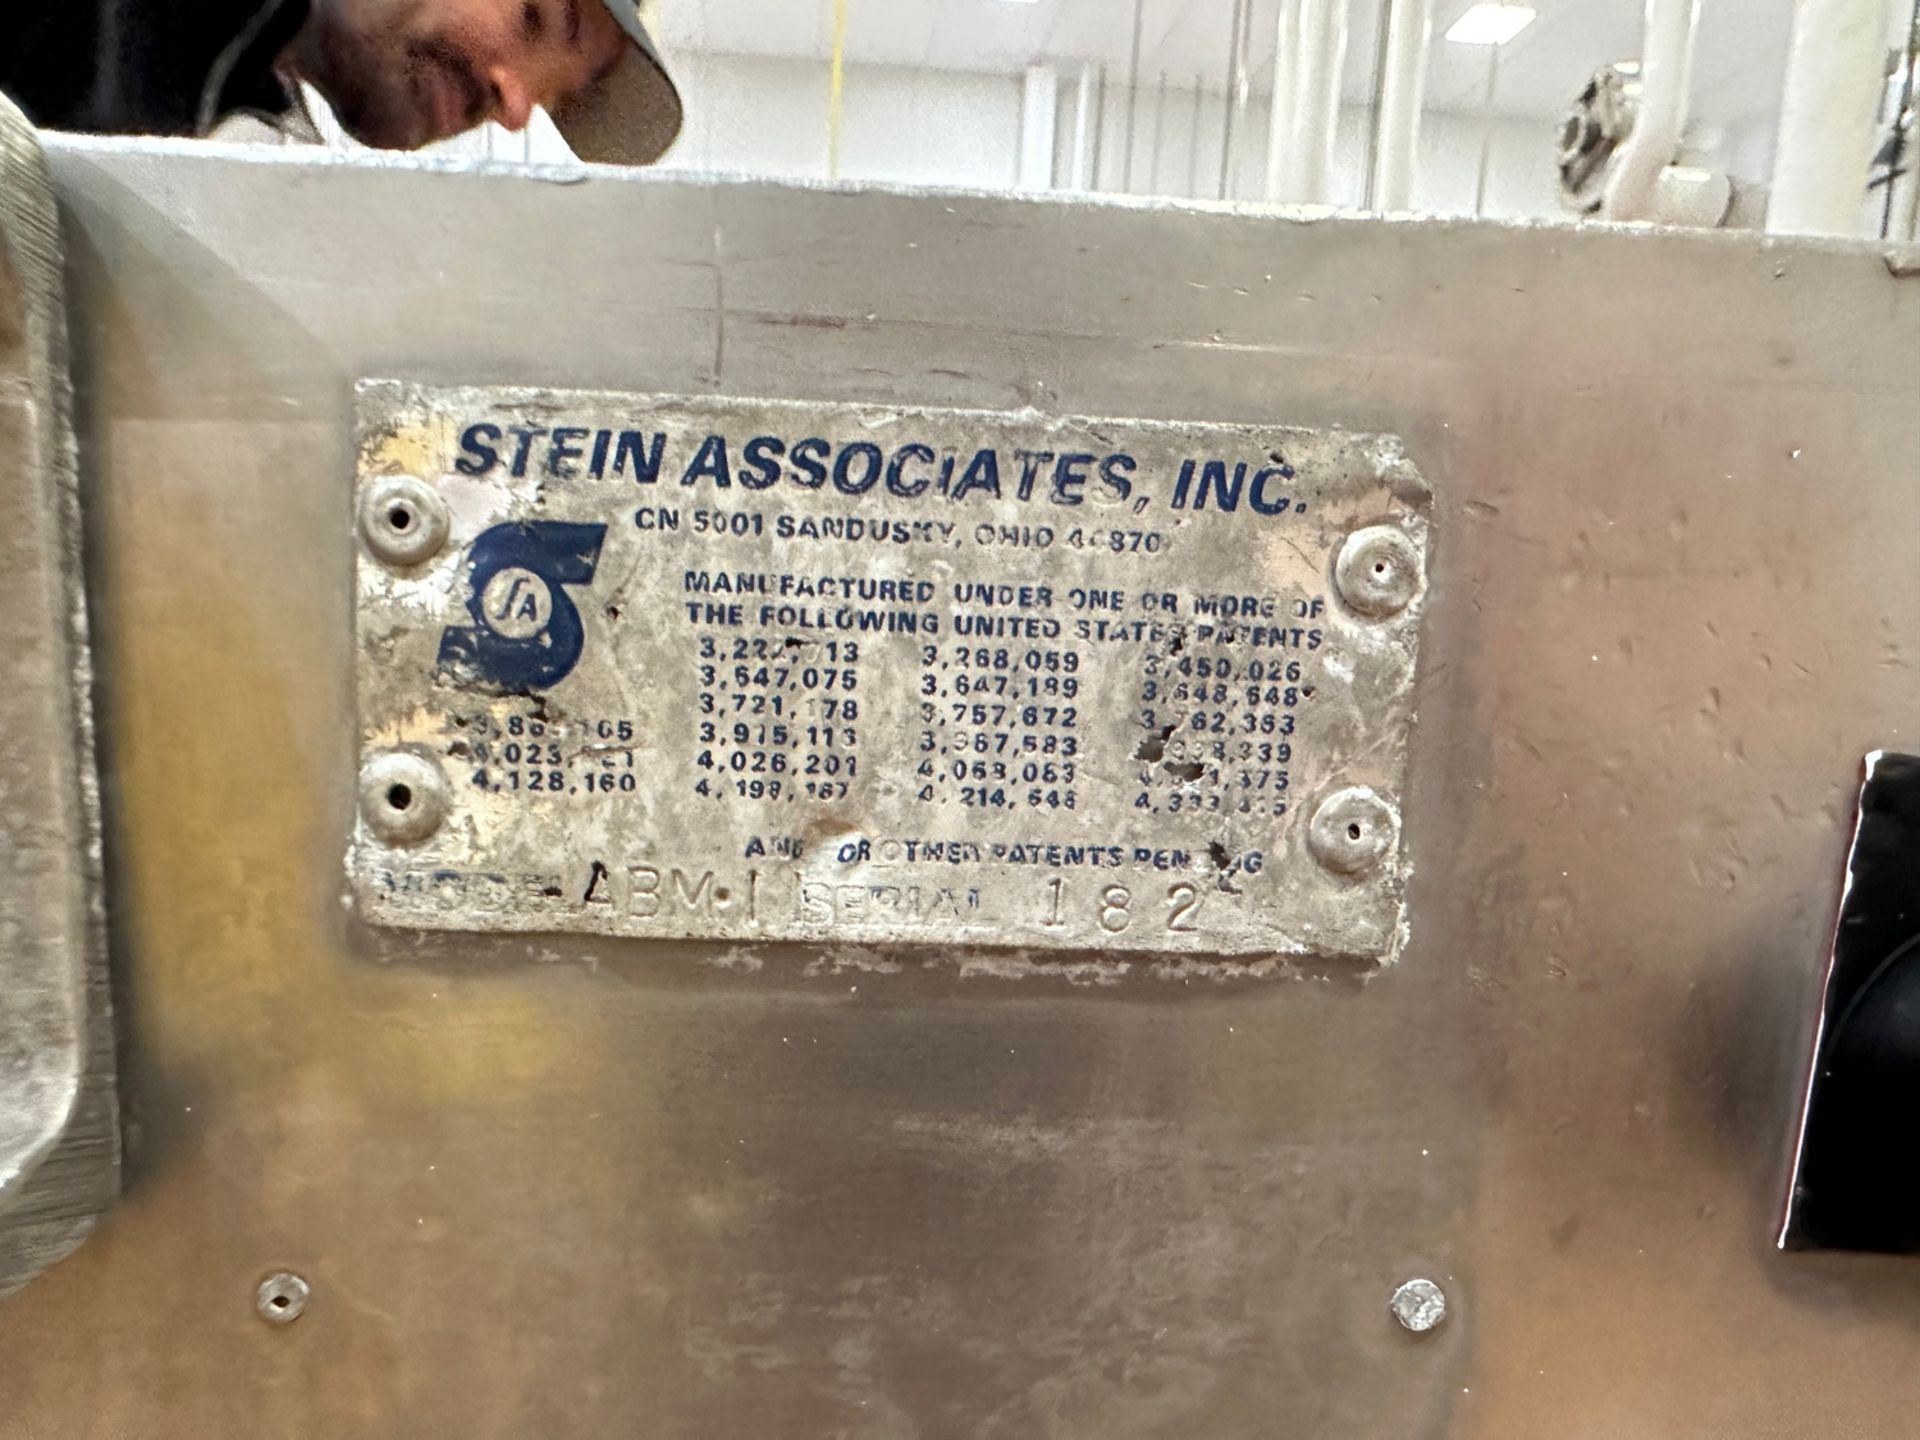 Stein Breading Conveyor & Model ABM-1 Water Skid, S/N: 182 | Rig Fee $150 - Image 2 of 4